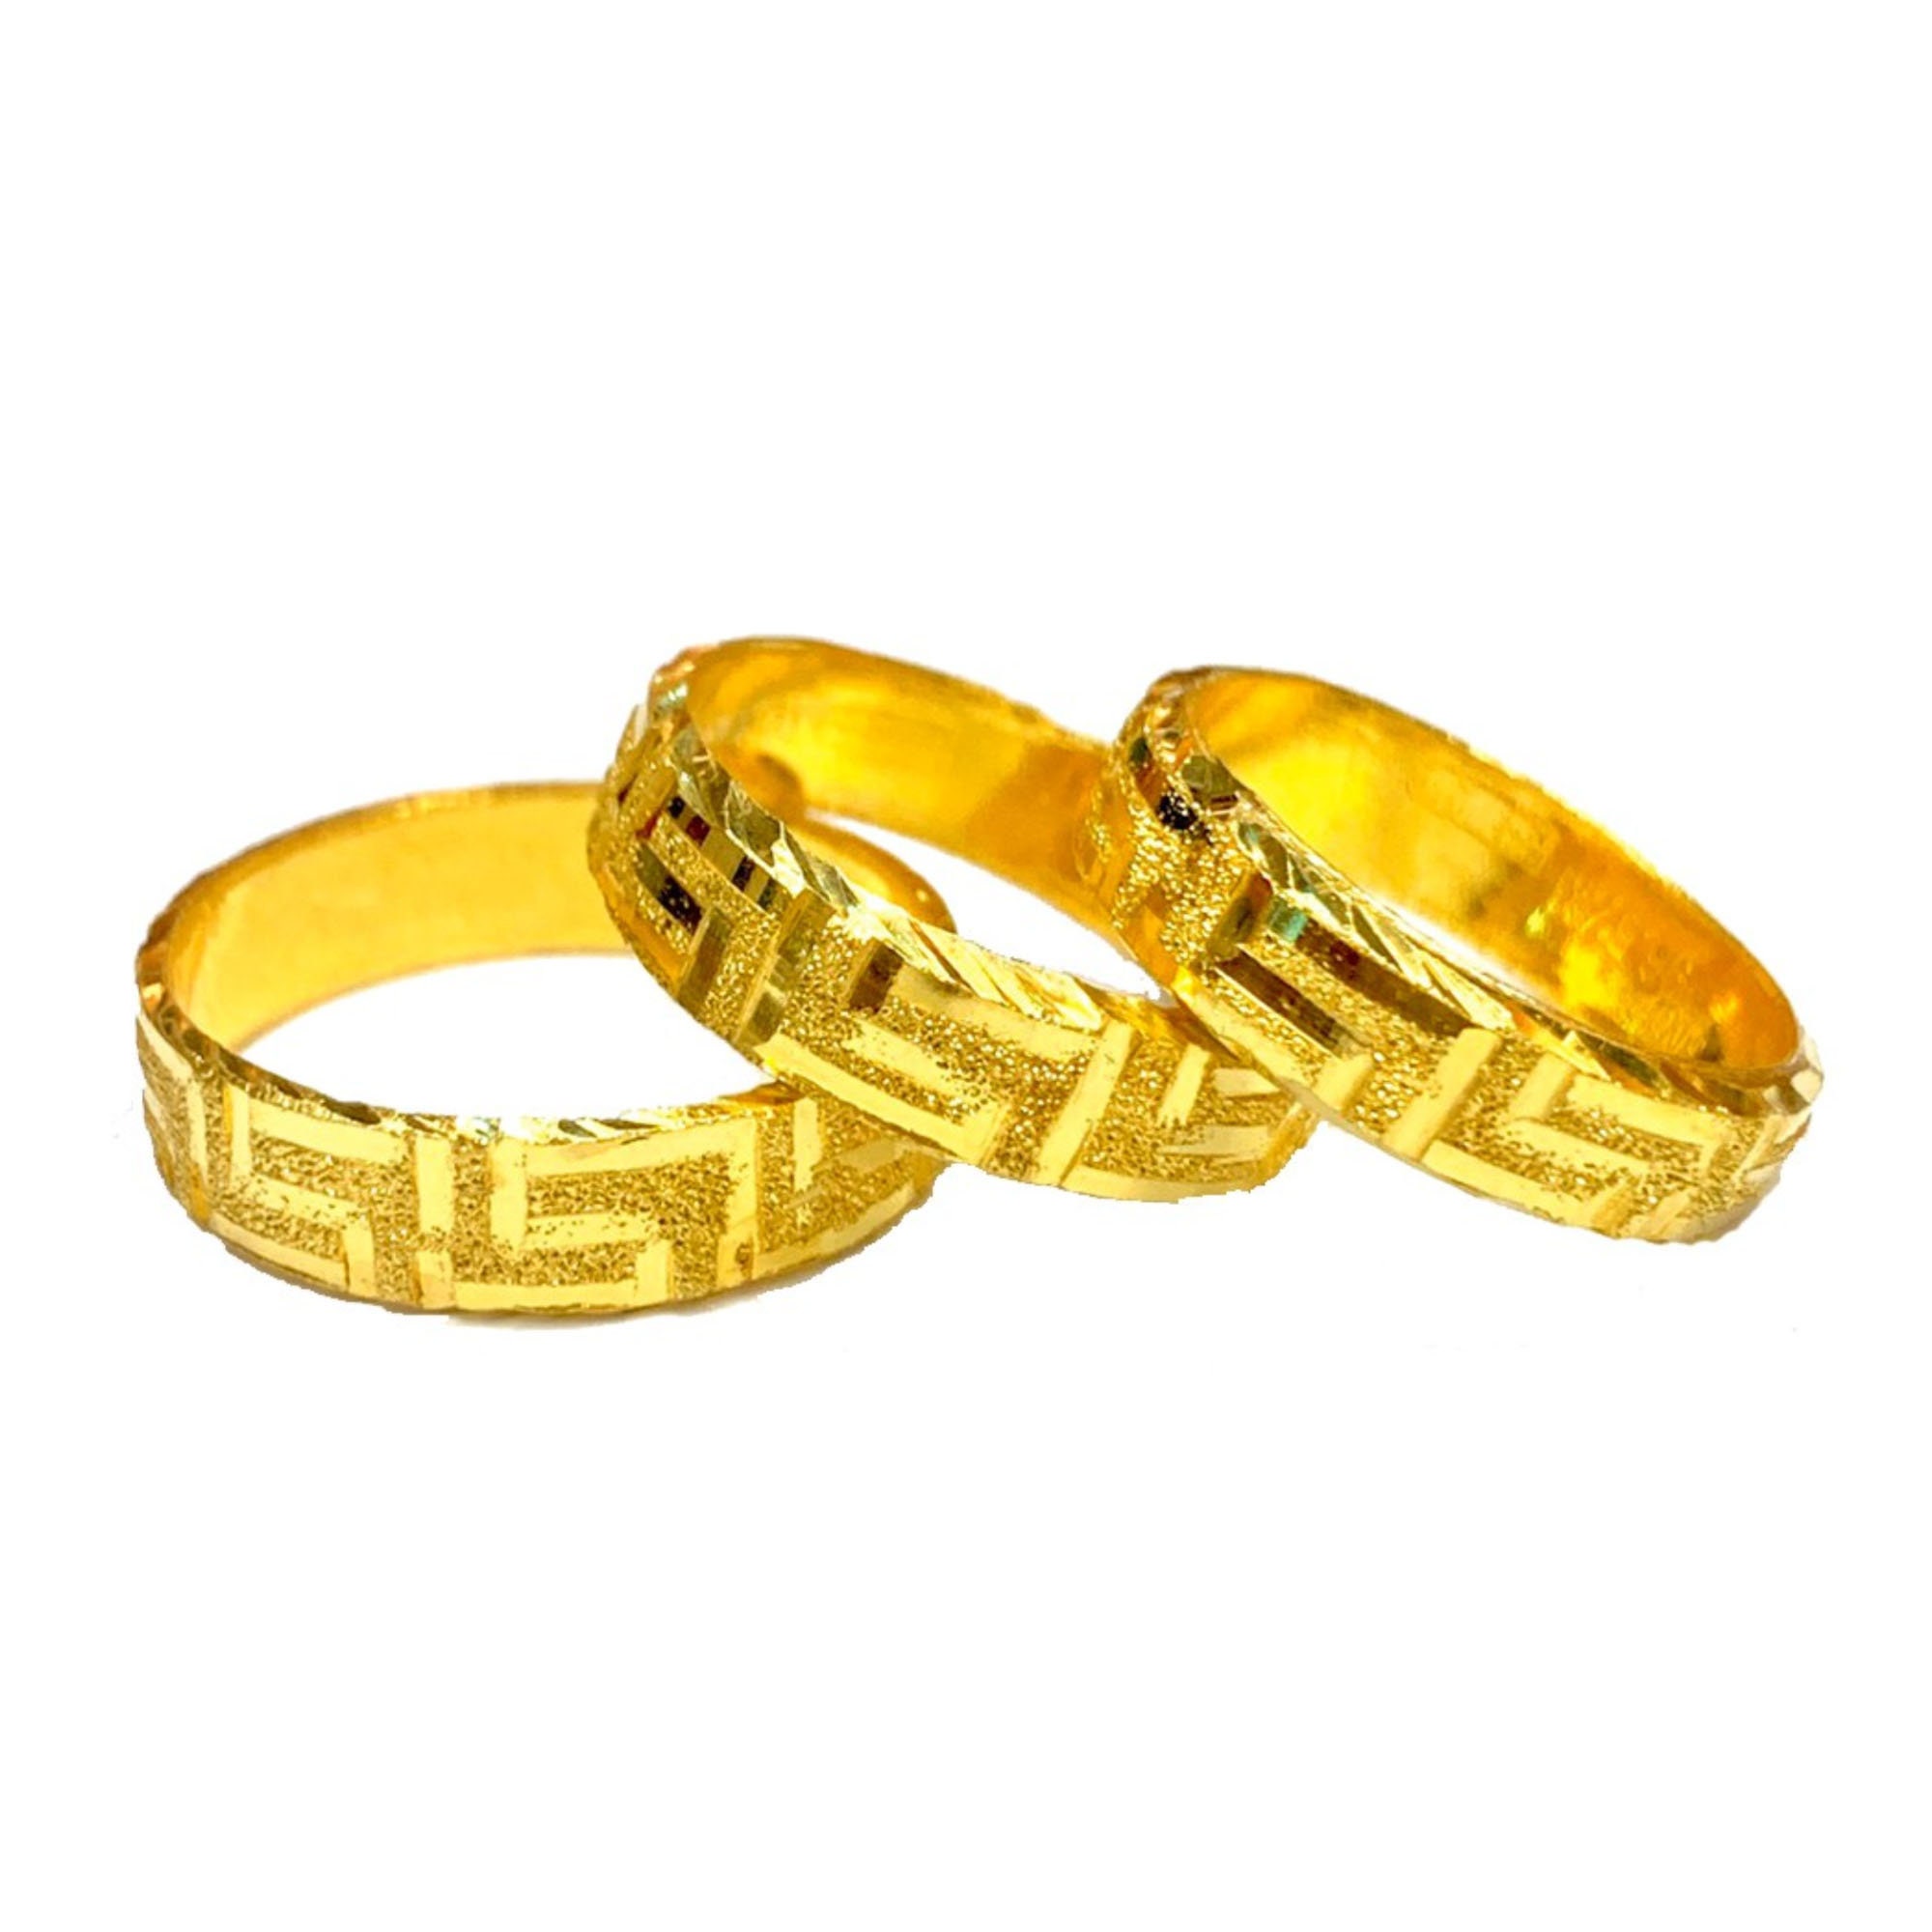 Unbranded 24k Yellow Gold Rings for Men for sale | eBay